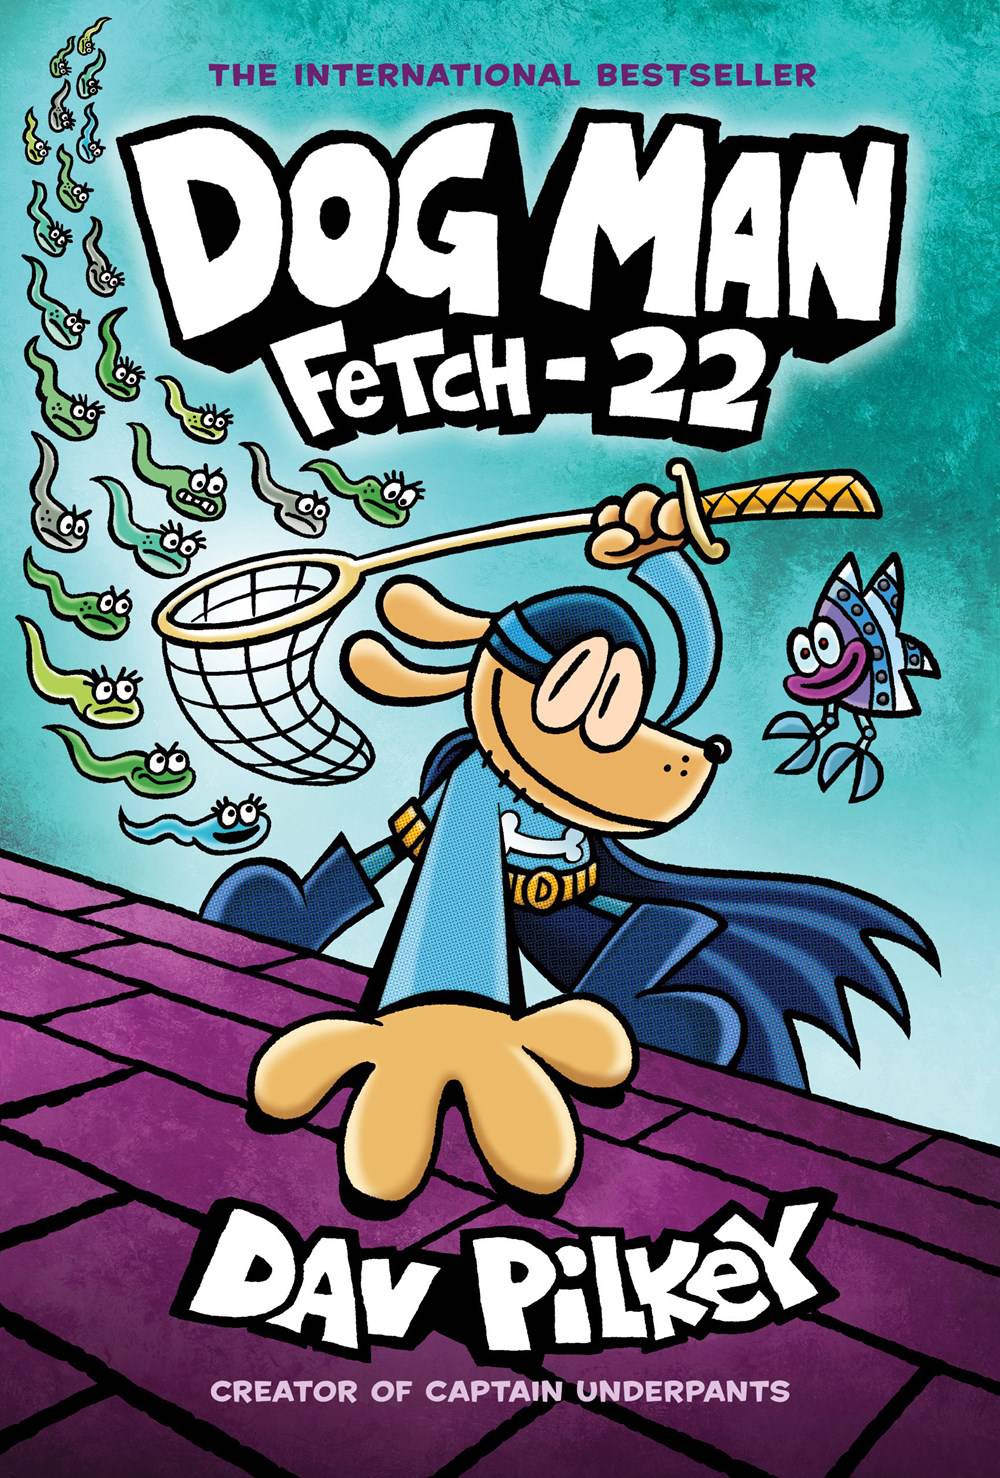 Dog Man Vol. 08 Fetch-22